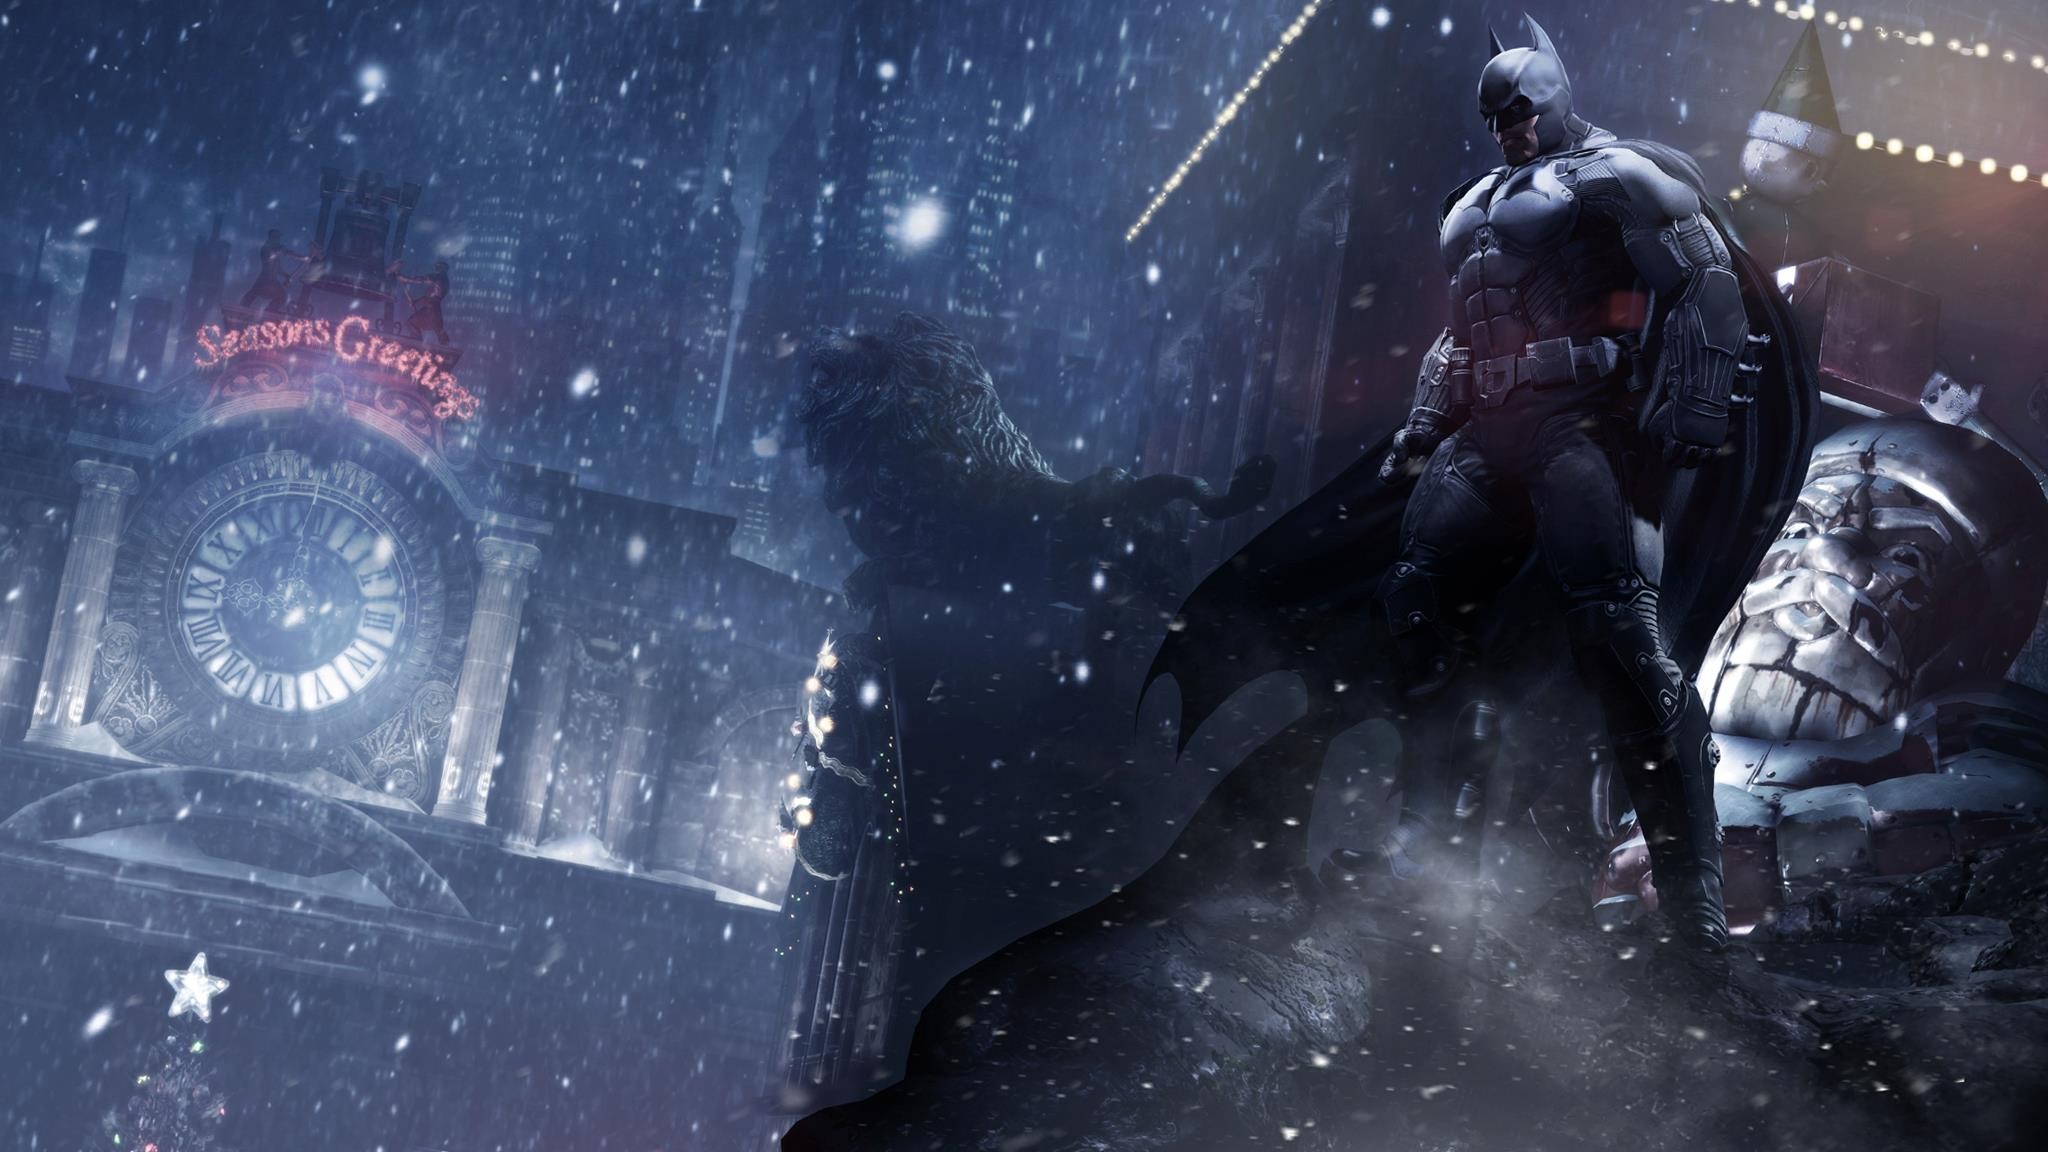 fondo de pantalla de batman arkham,juego de acción y aventura,hombre murciélago,personaje de ficción,juego de pc,superhéroe